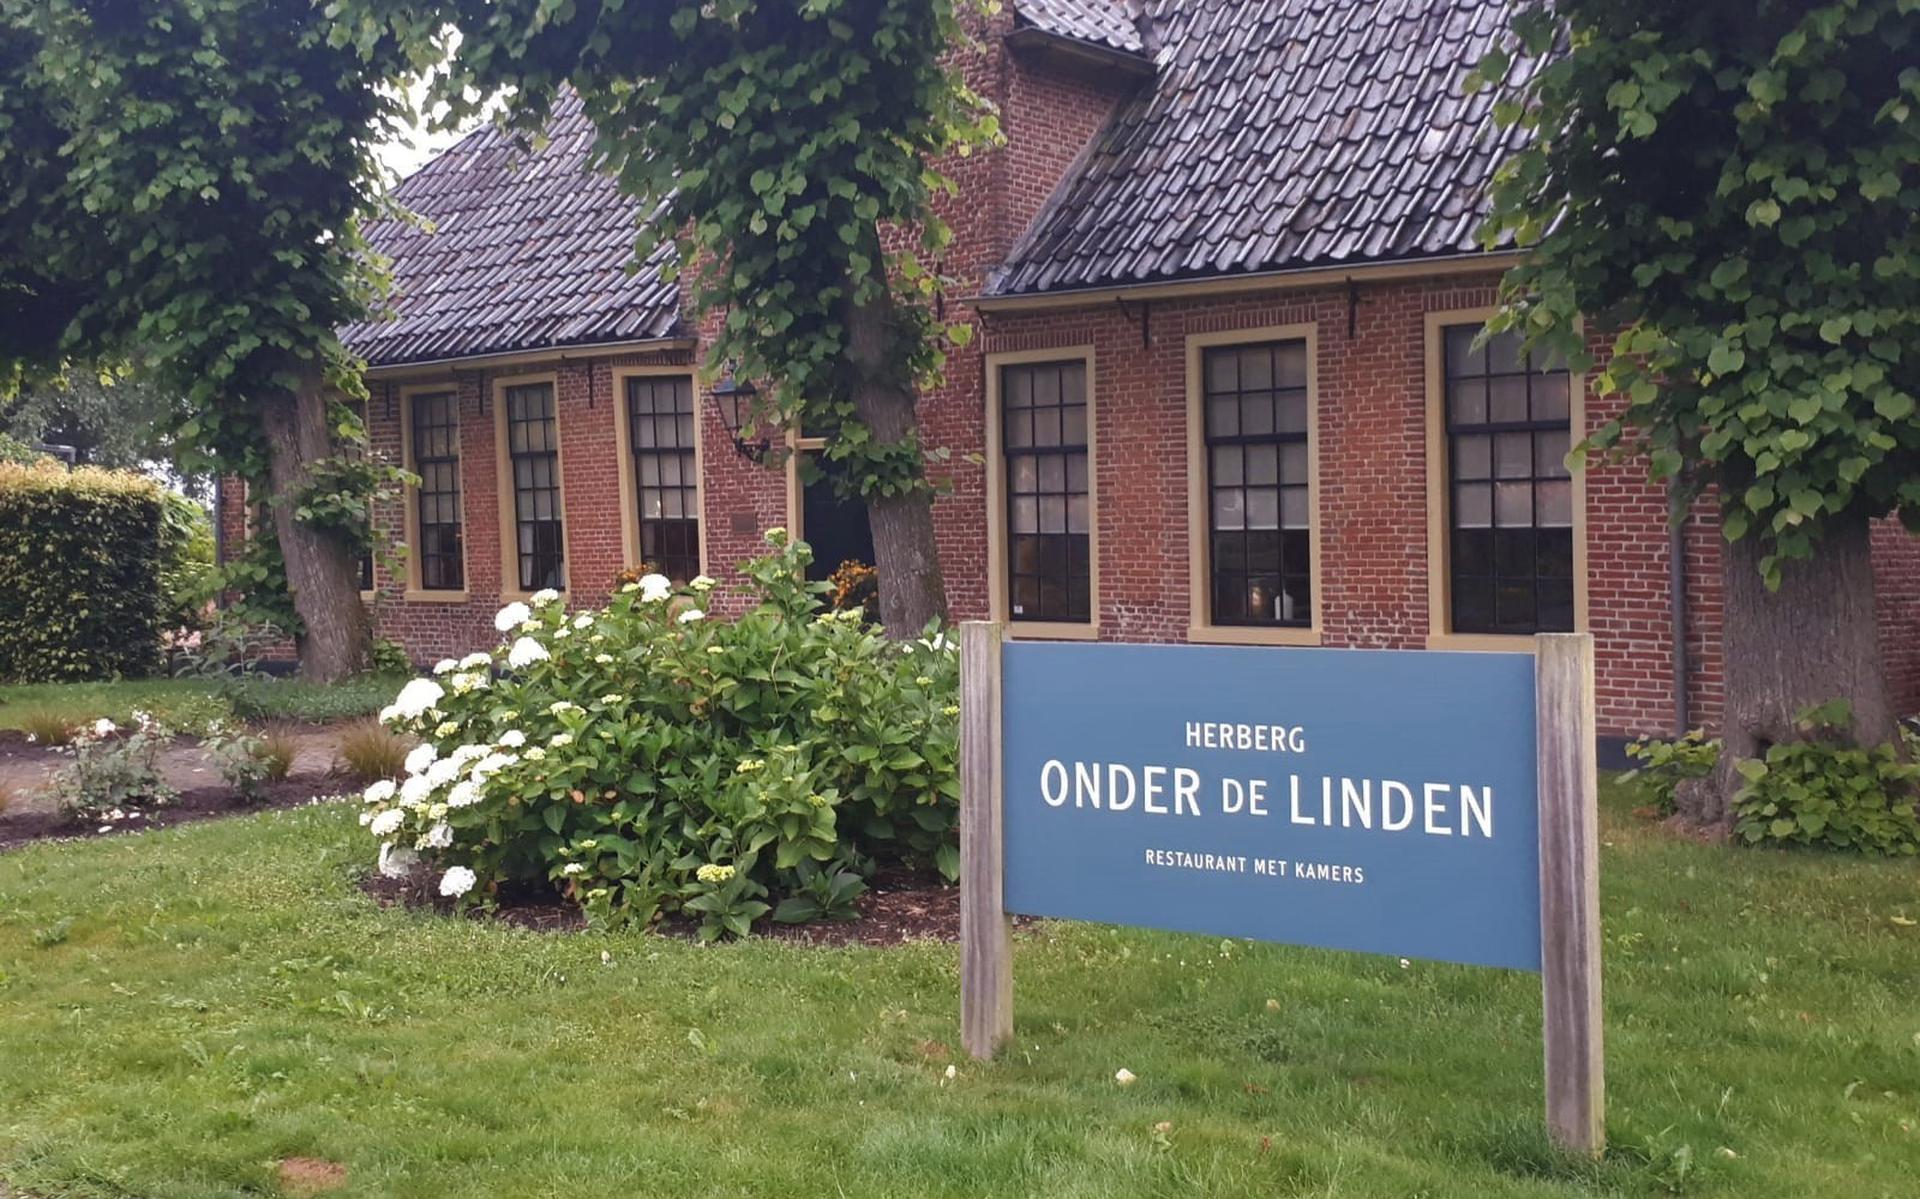 Herberg Onder de Linden in Aduard.